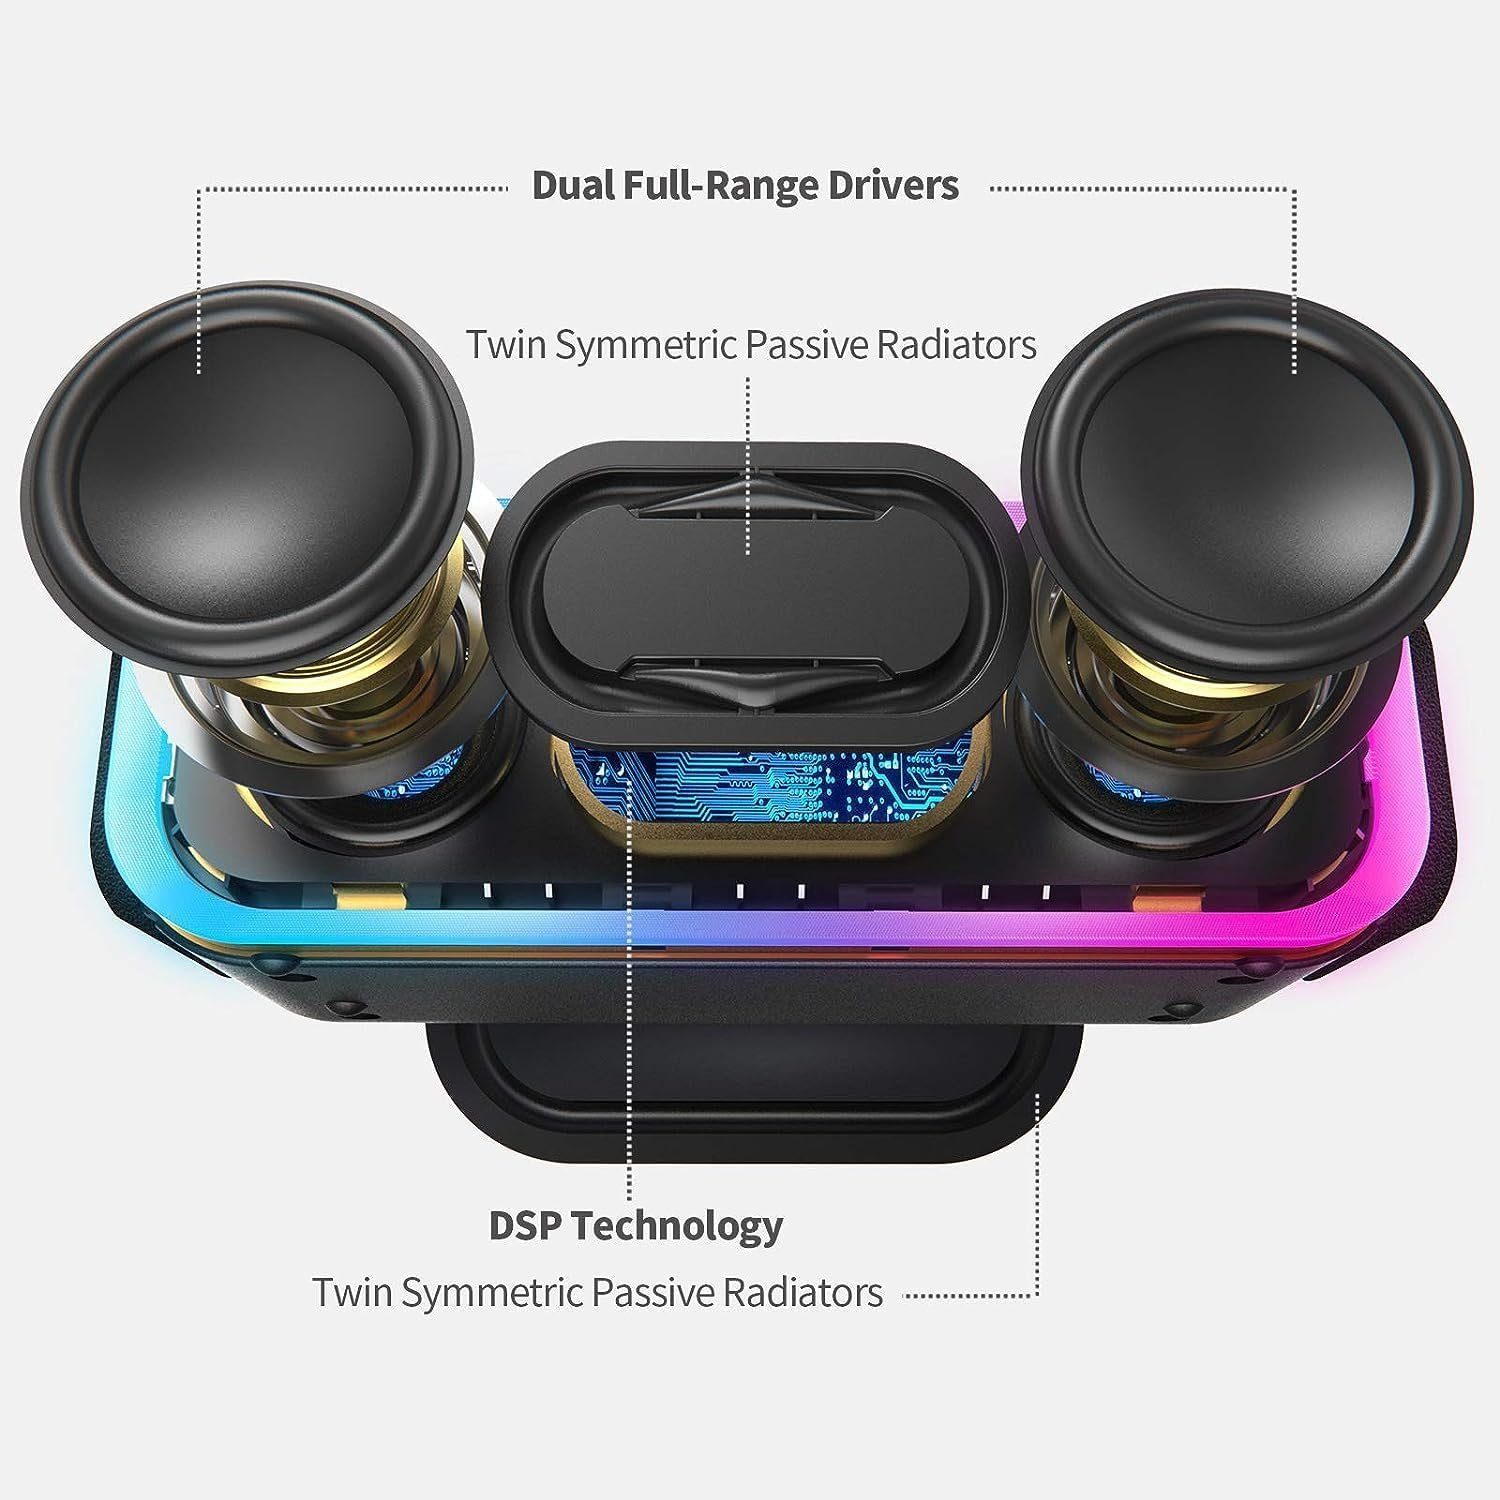 Bluetooth Wasserdicht, 15 DOSS Lautsprecher Wireless Musikbox Stereo-Pairing, Stereo IPX5 Lichtern, 24 Std) W, (Bluetooth,